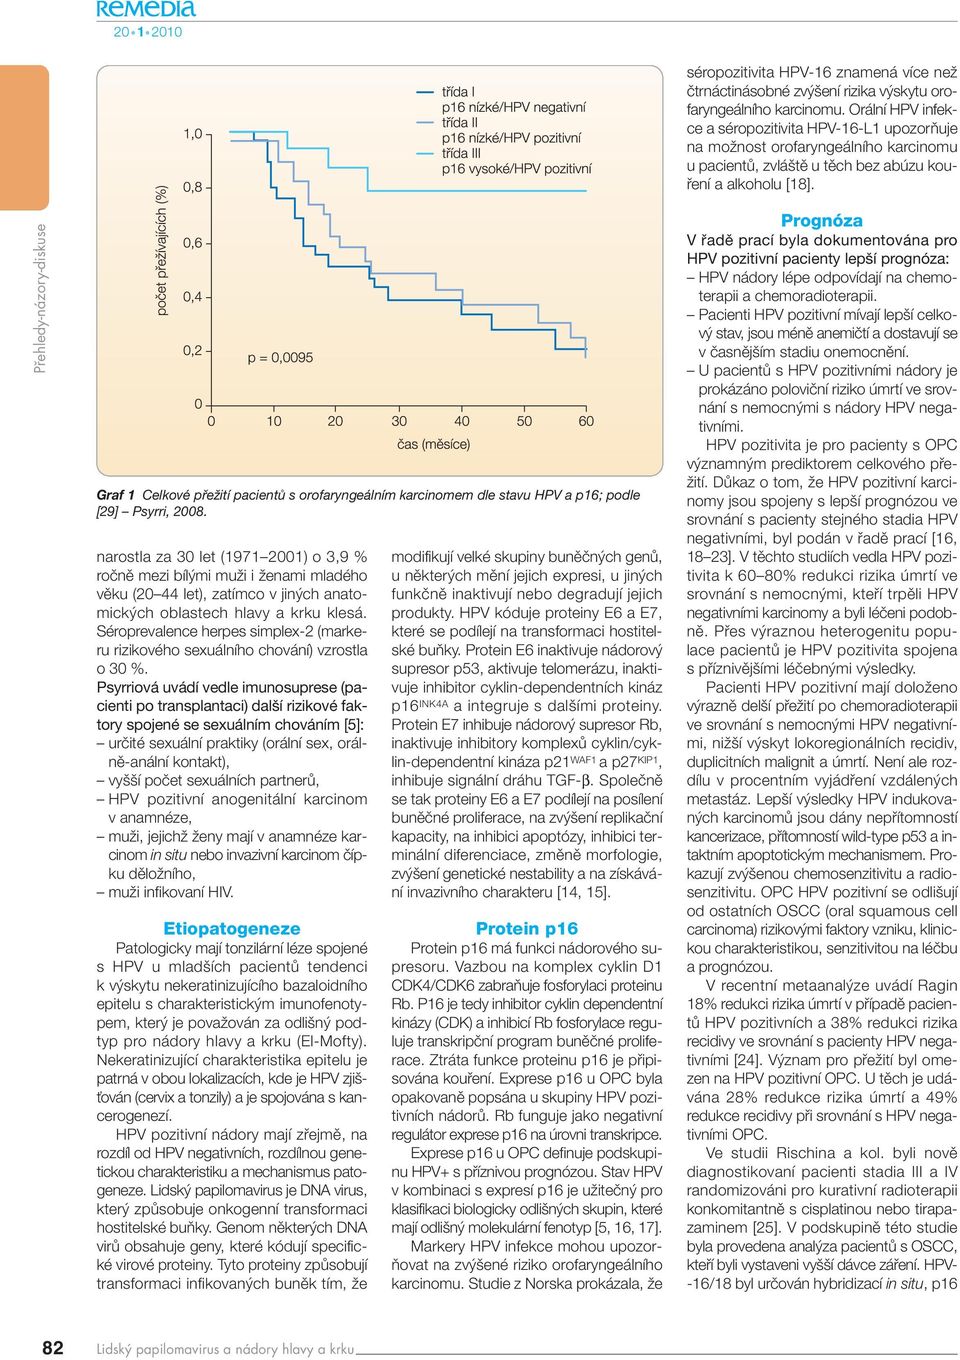 Graf 1 Celkové přežití pacientů s orofaryngeálním karcinomem dle stavu HPV a p16; podle [29] Psyrri, 2008.